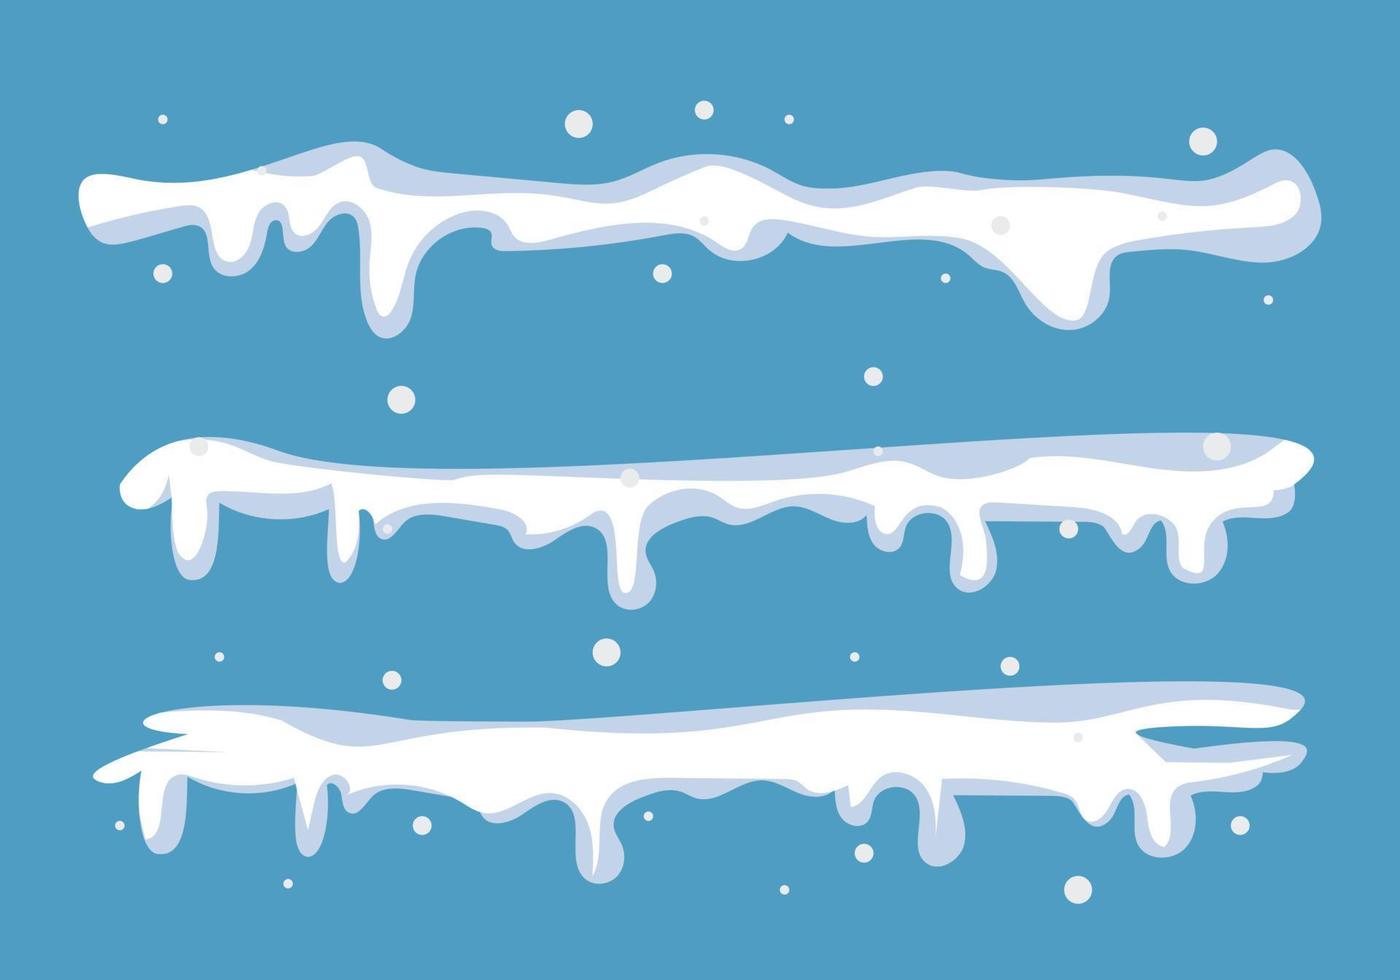 bouchons de neige, glace enneigée et glaçons congelés, icônes vectorielles de dessin animé, isolés sur fond transparent. casquettes abstraites de givre de neige pour la conception d'éléments de noël et du nouvel an vecteur